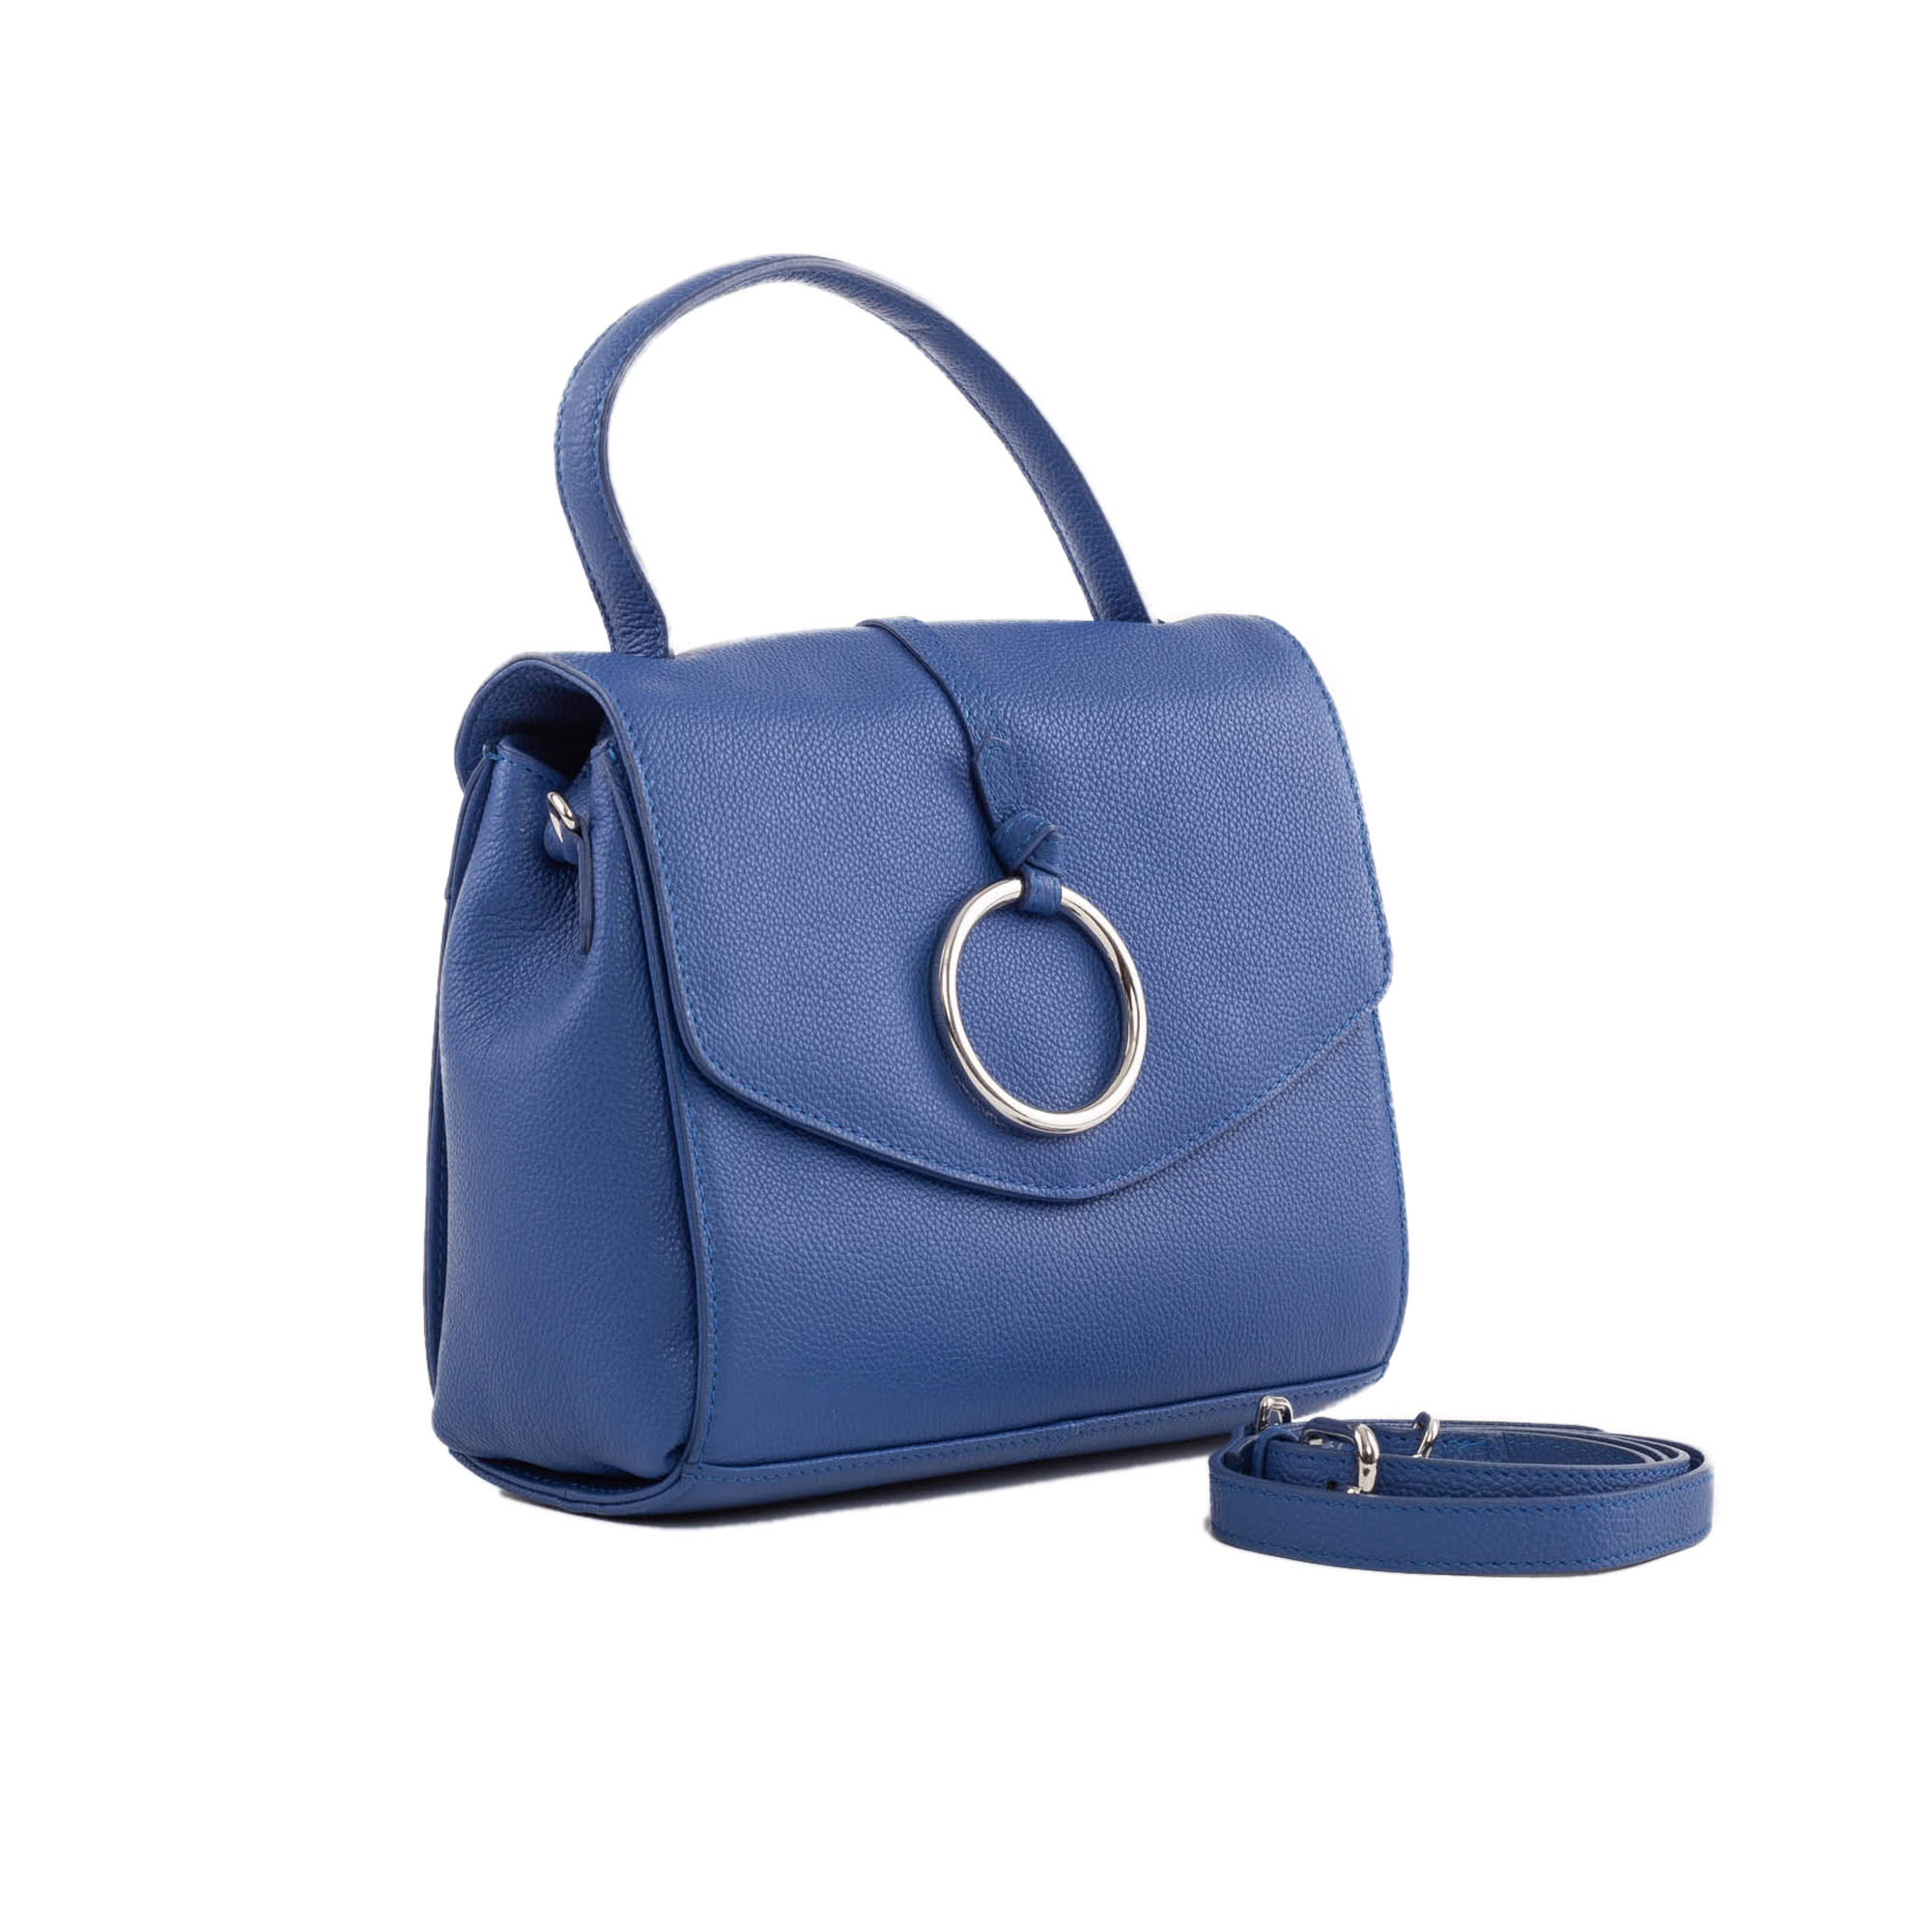 Tosca Blu сумки. Tosca Blu сумка голубая. Tosca Blu Green Bag. Женская сумка синяя Tosca Blu.